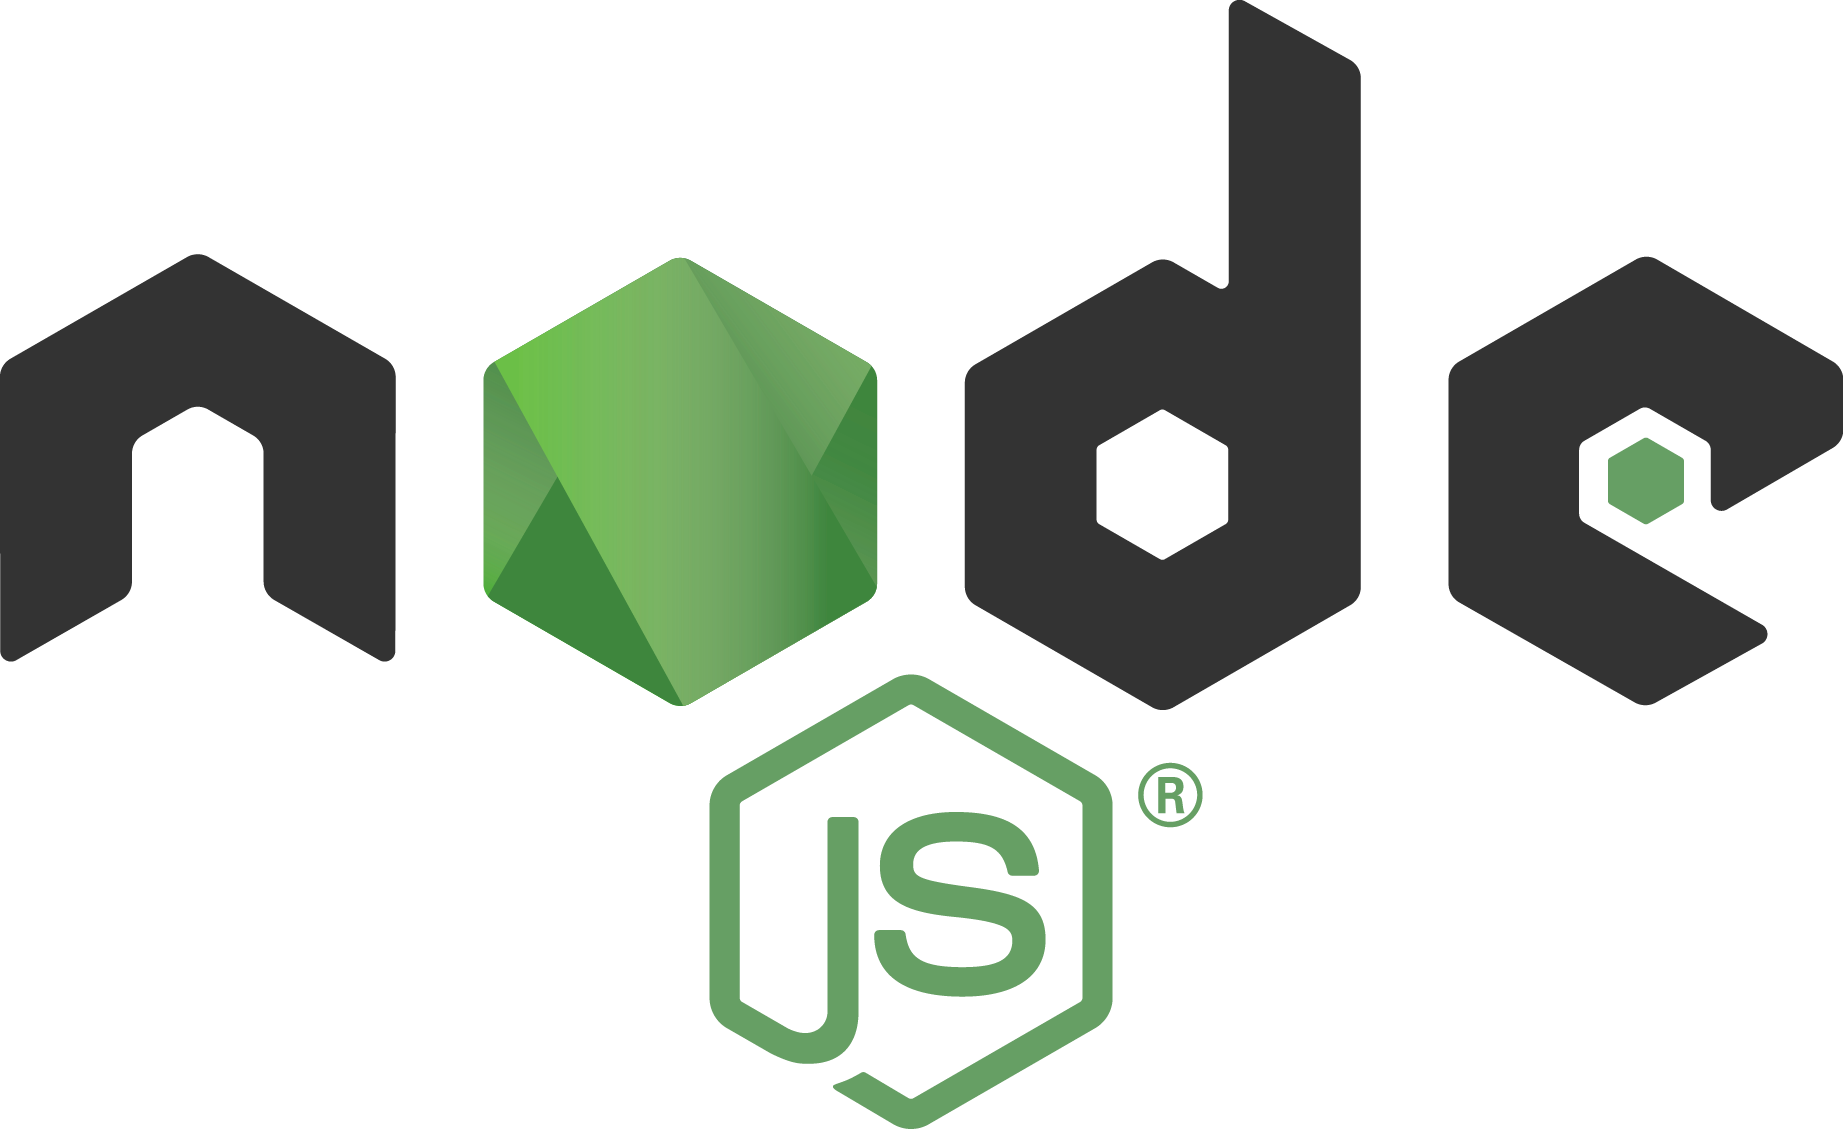 Sau khi học lập trình JavaScript ổn rồi thì nên học NodeJS